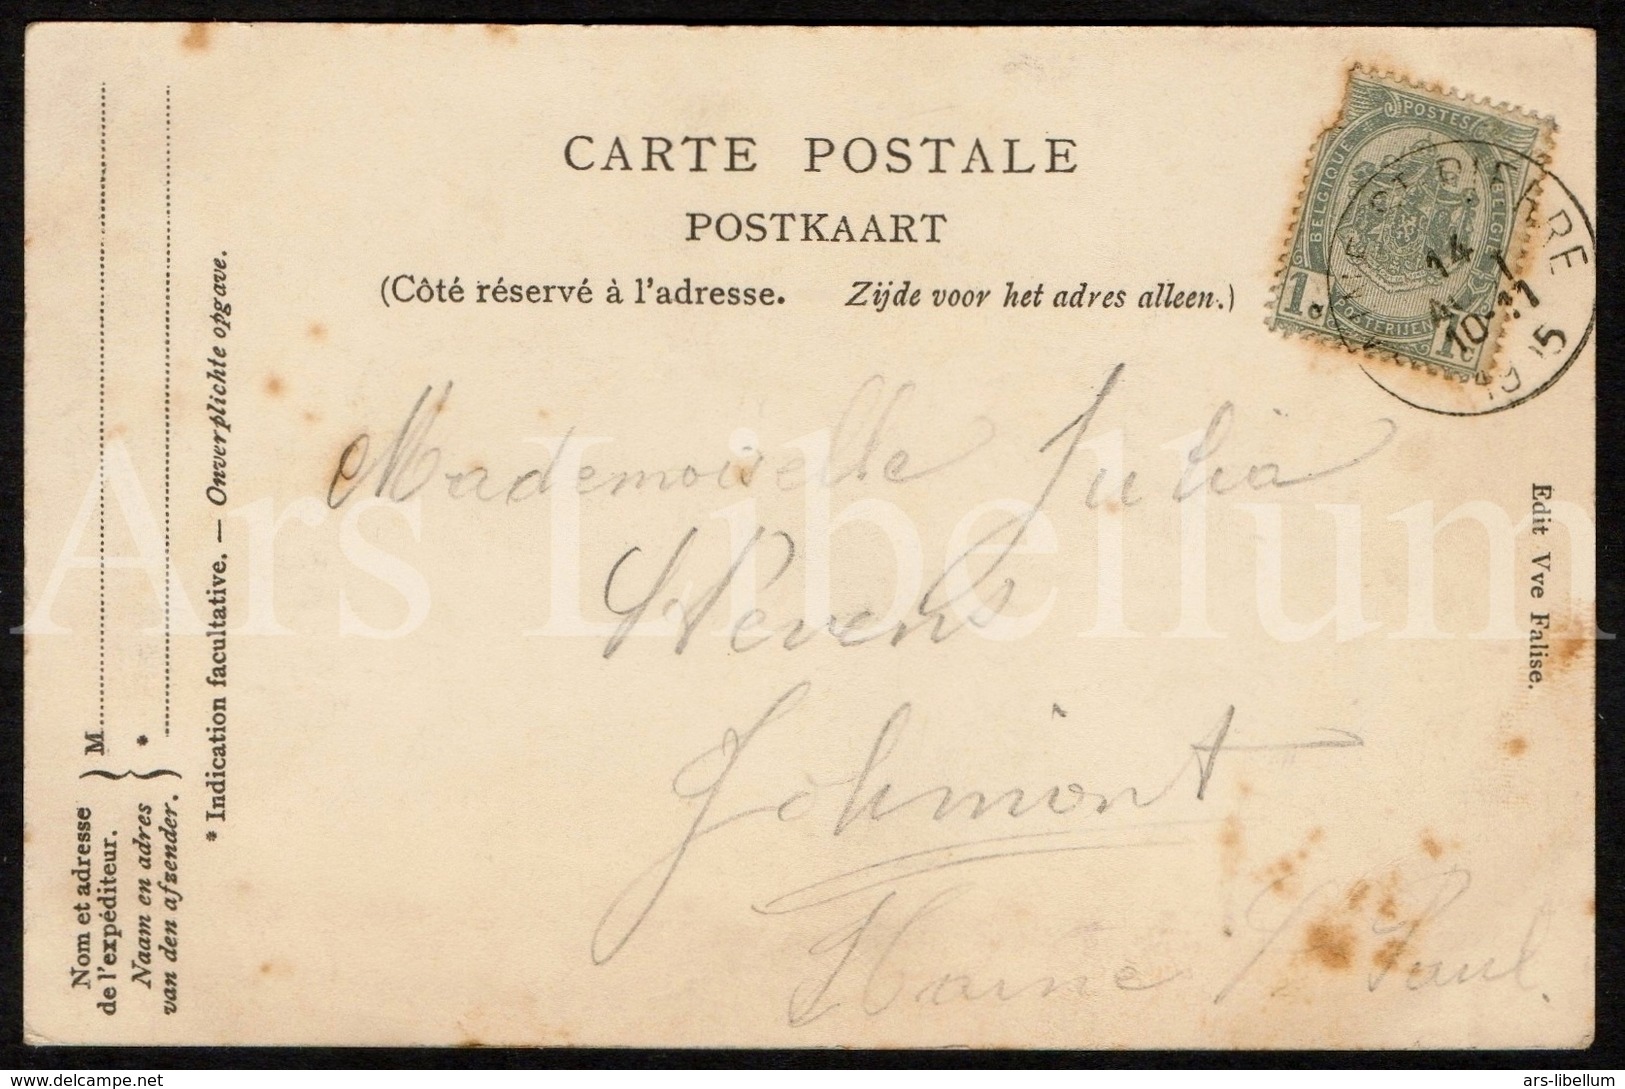 Postcard / CPA / La Louvière / Souvenir De La Louvière / 1905 / 2 Scans / Edit. Vve Falise - La Louviere